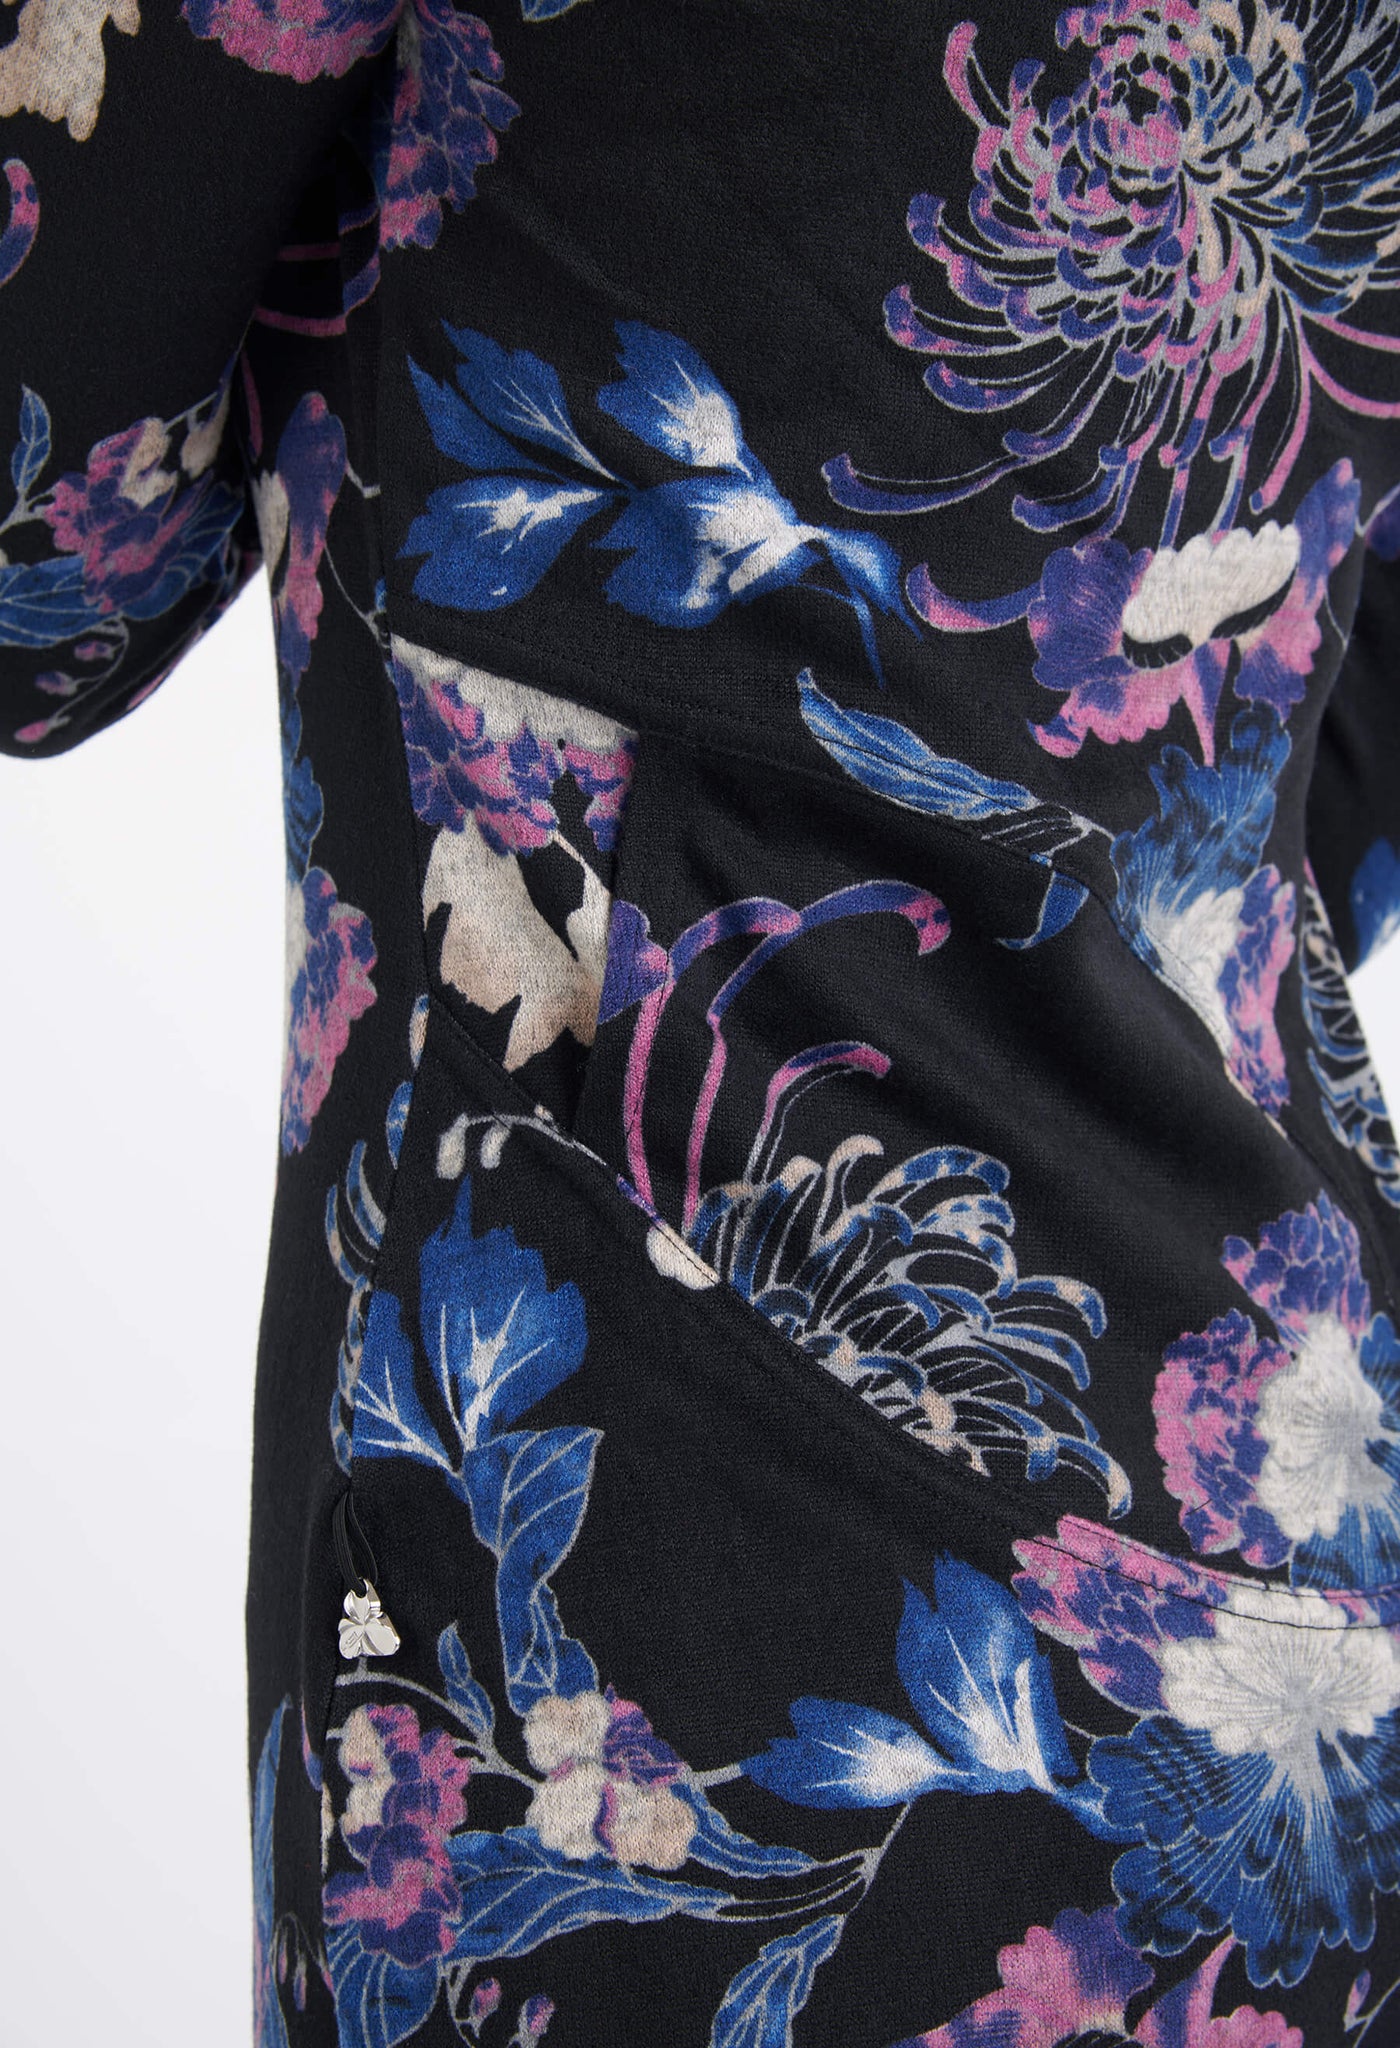 Découvrez l'élégante robe Anne et son joli imprimé Lotus. Une robe simple, mais unique conçue par la designer Québécoise, Katy St-Laurent.